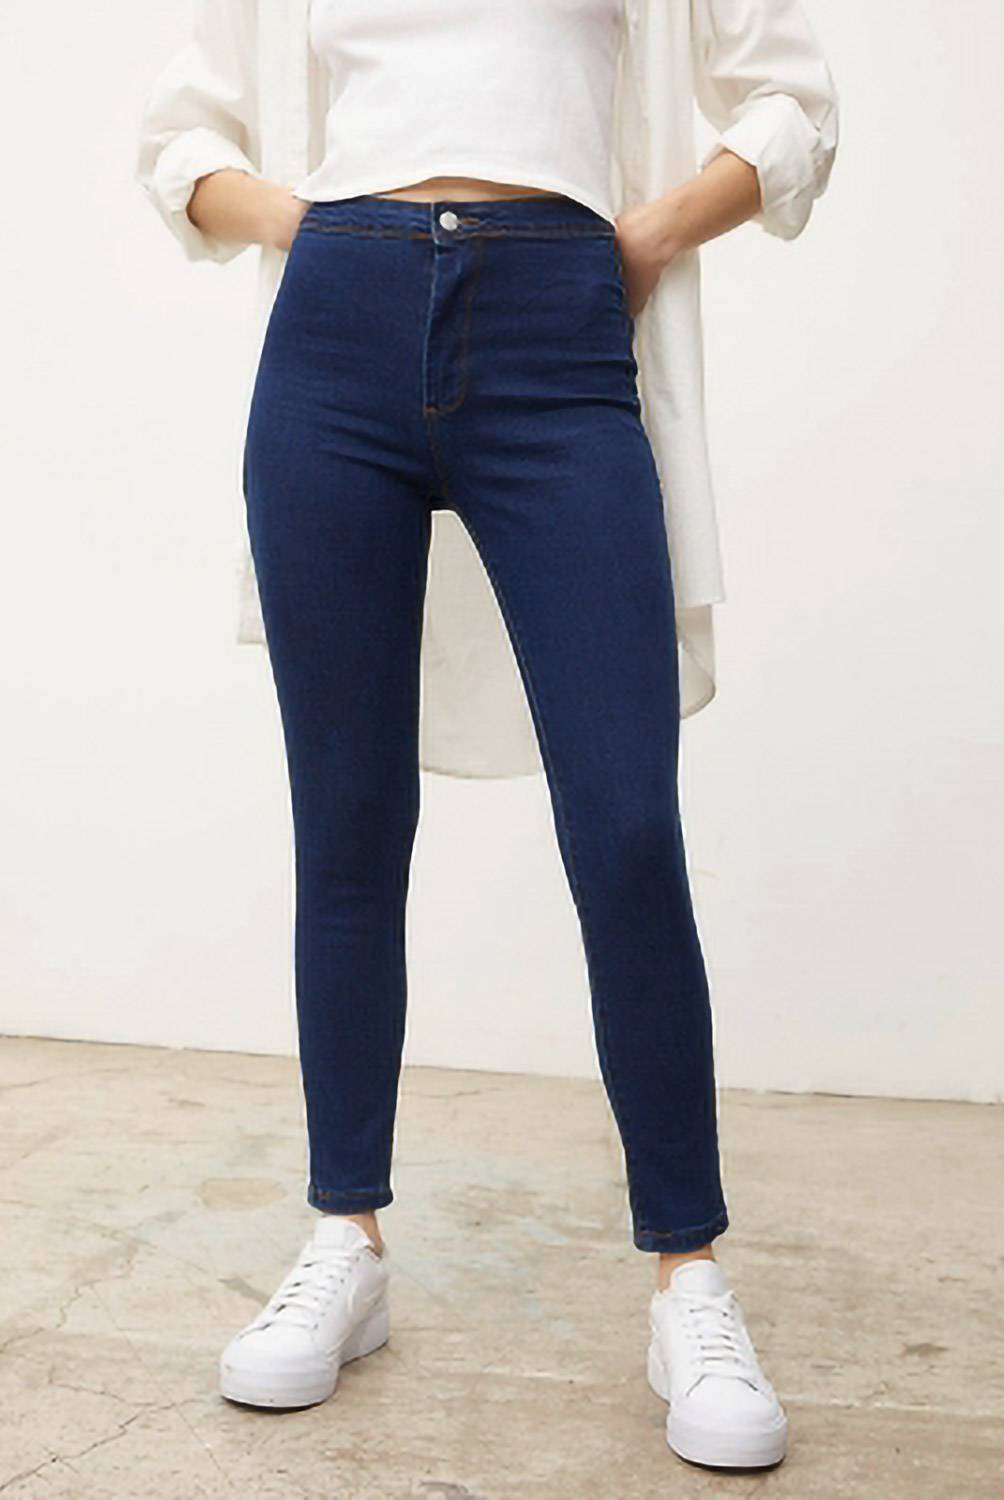 SYBILLA - Jeans Skinny Kate Tiro Alto Mujer Sybilla